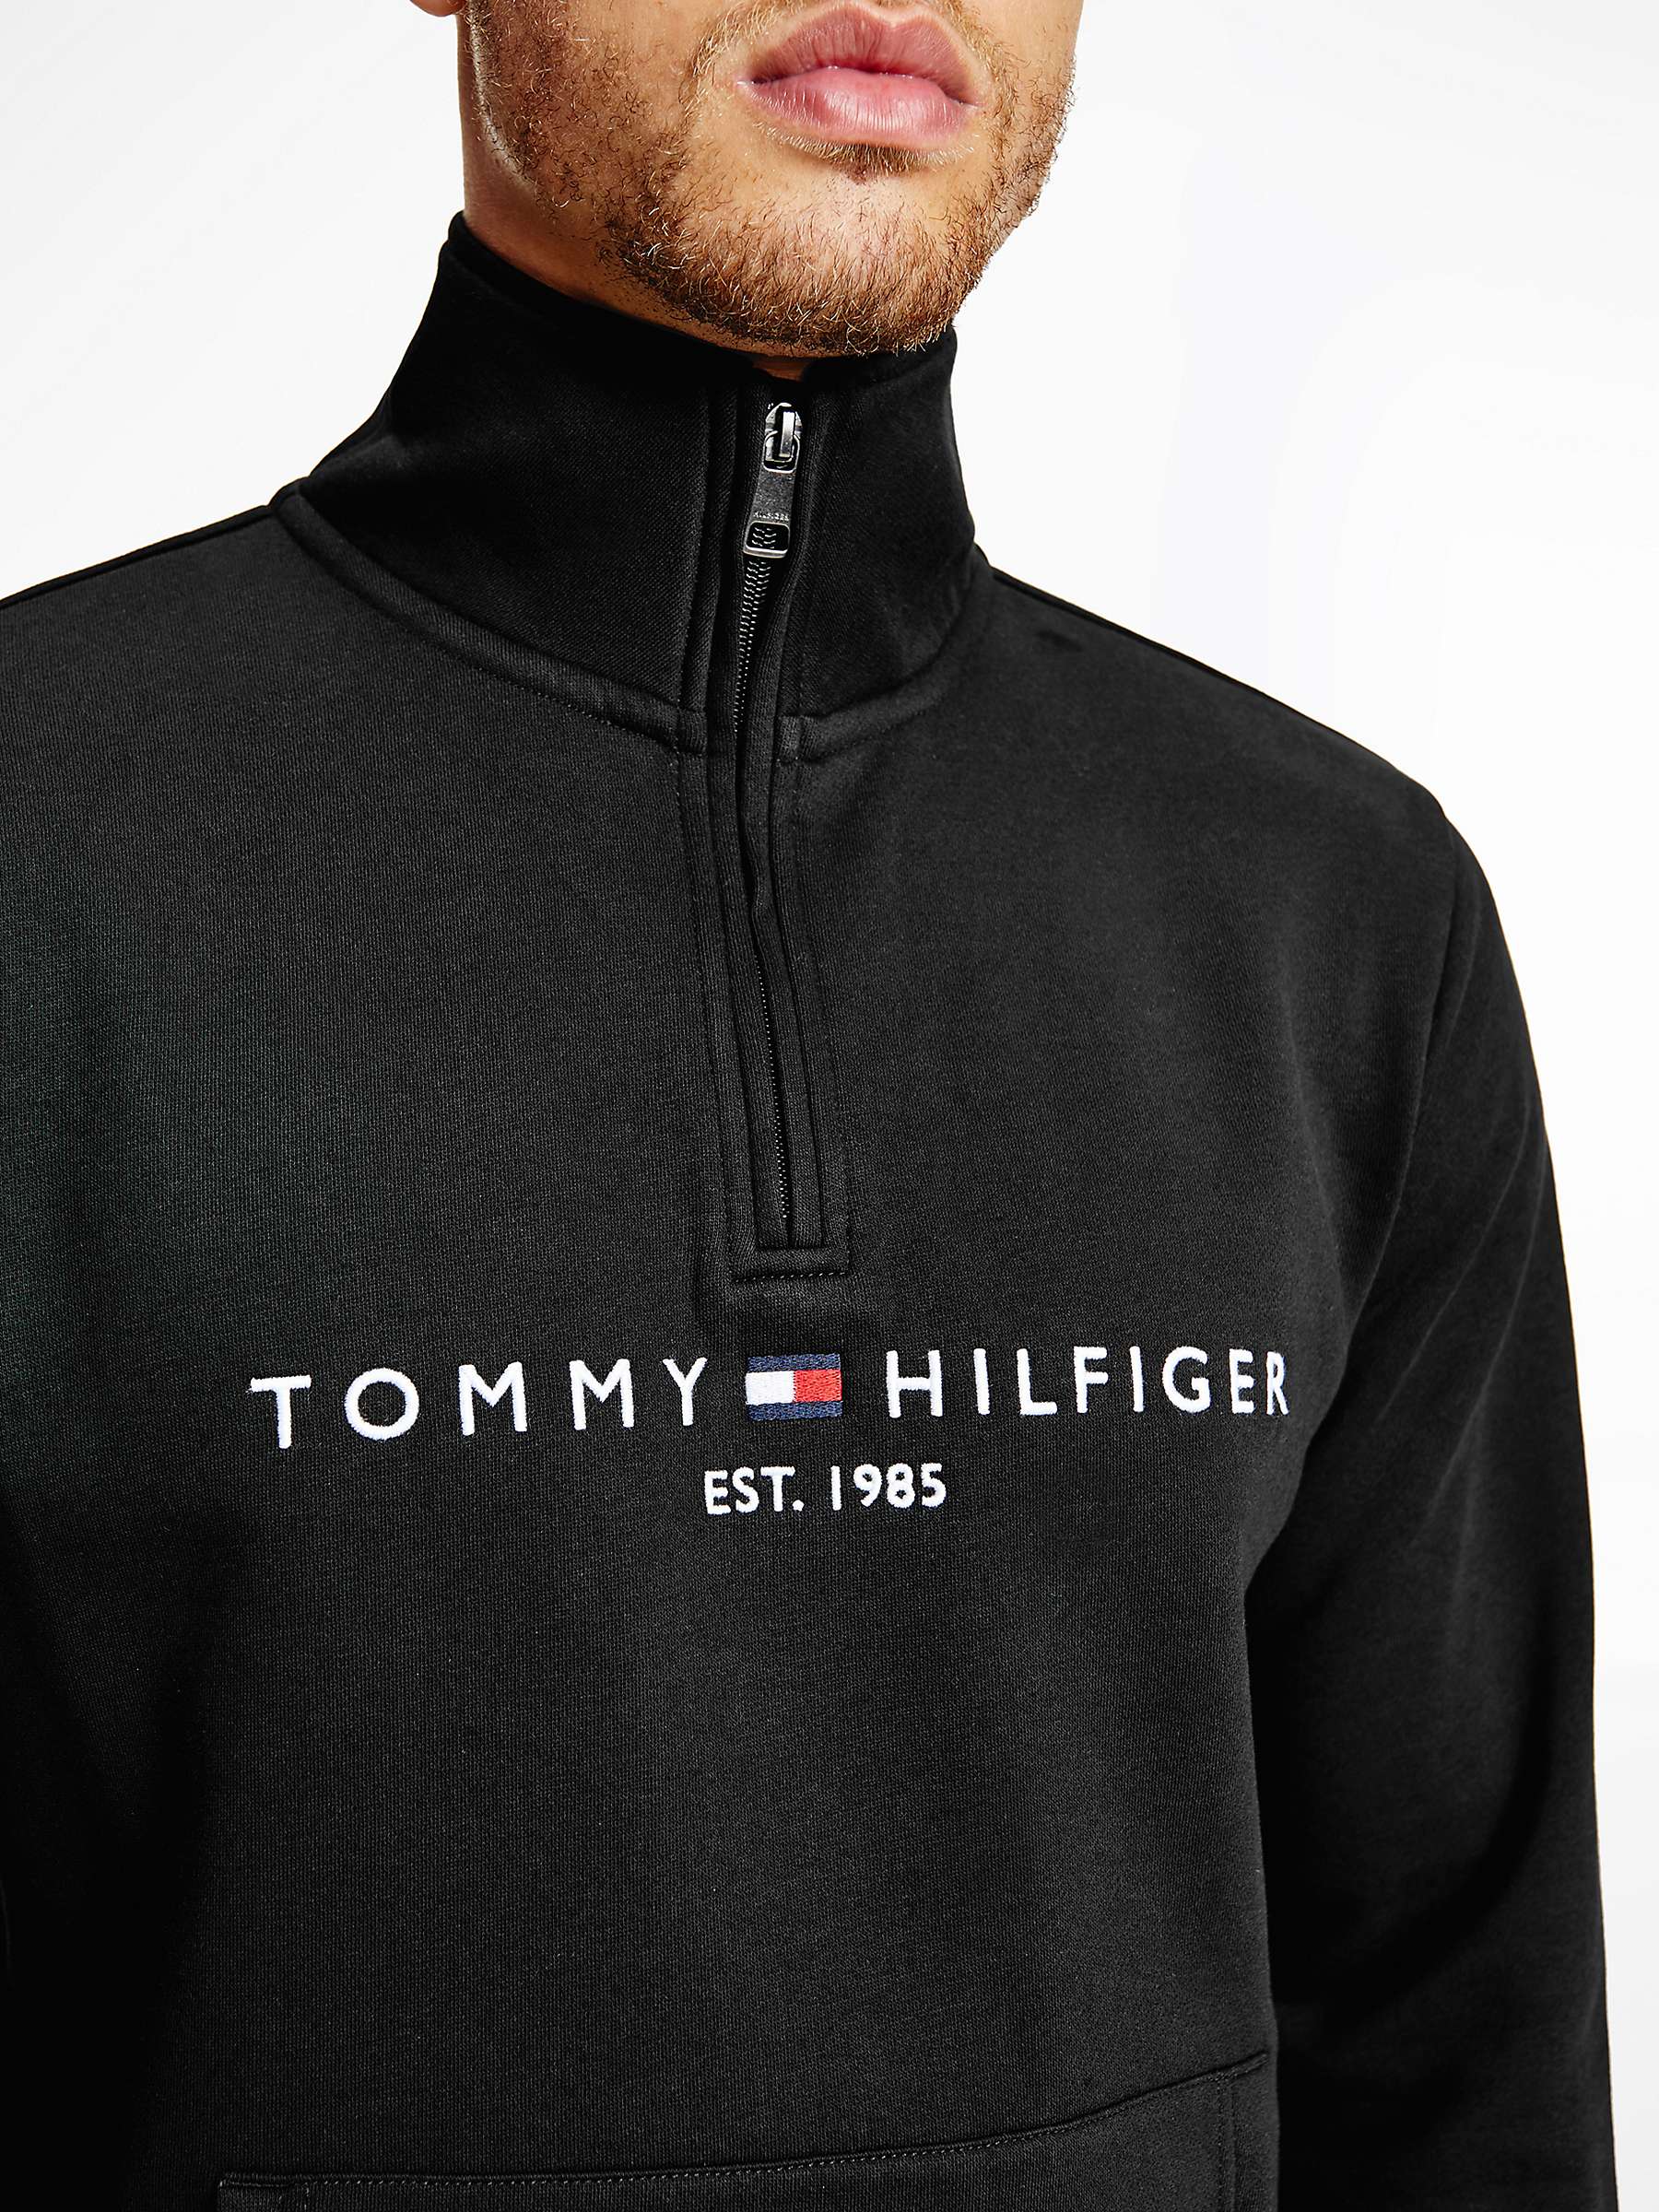 Tommy Hilfiger Mock Neck Sweatshirt, Black at John Lewis & Partners